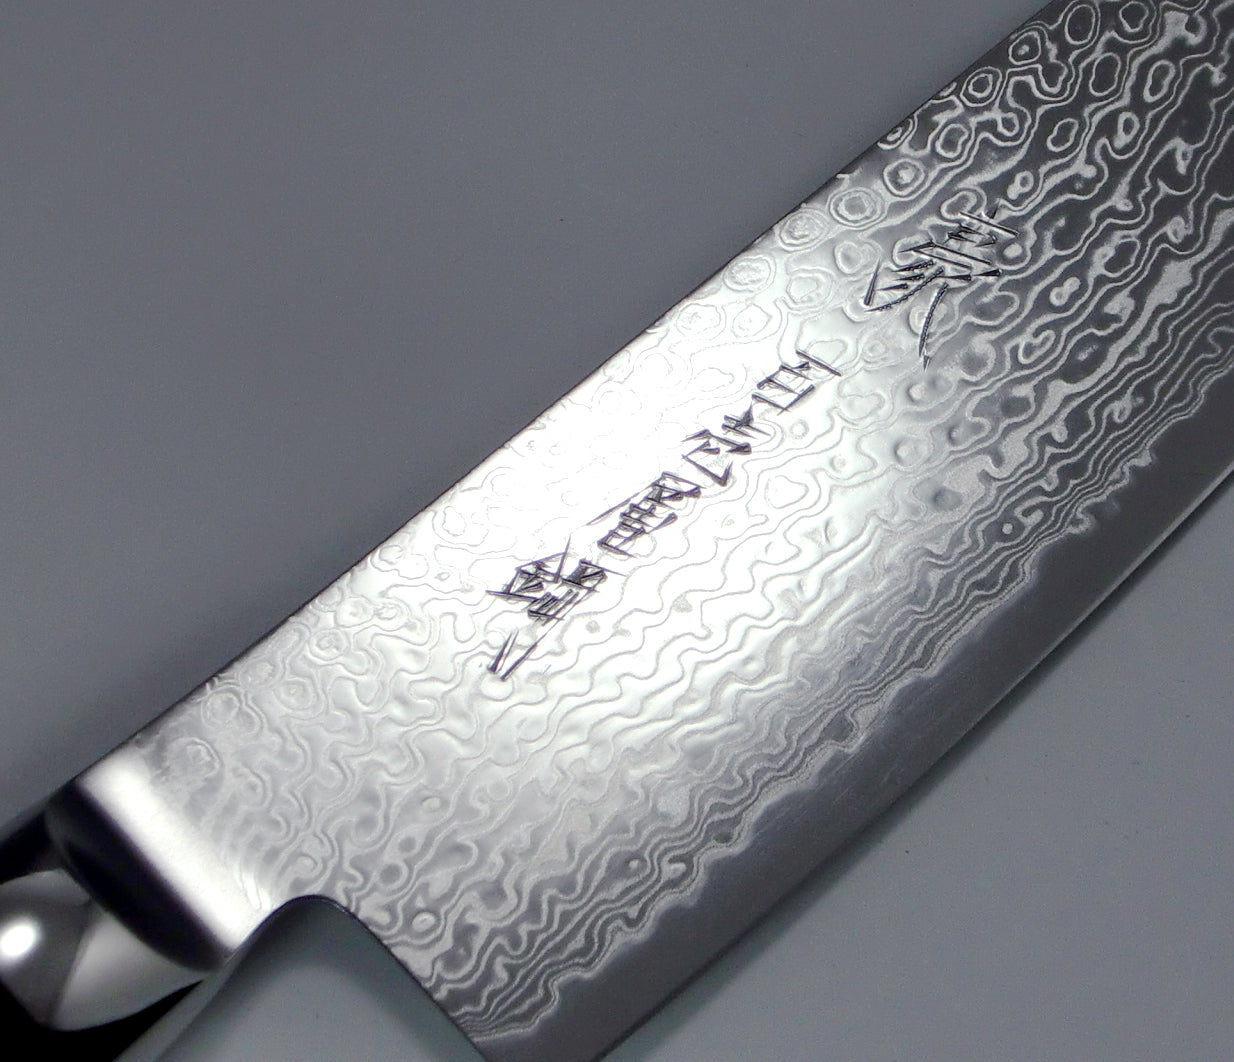 Yaxell Gou coltello cuoco lama 20cm damascato 101 strati 37000